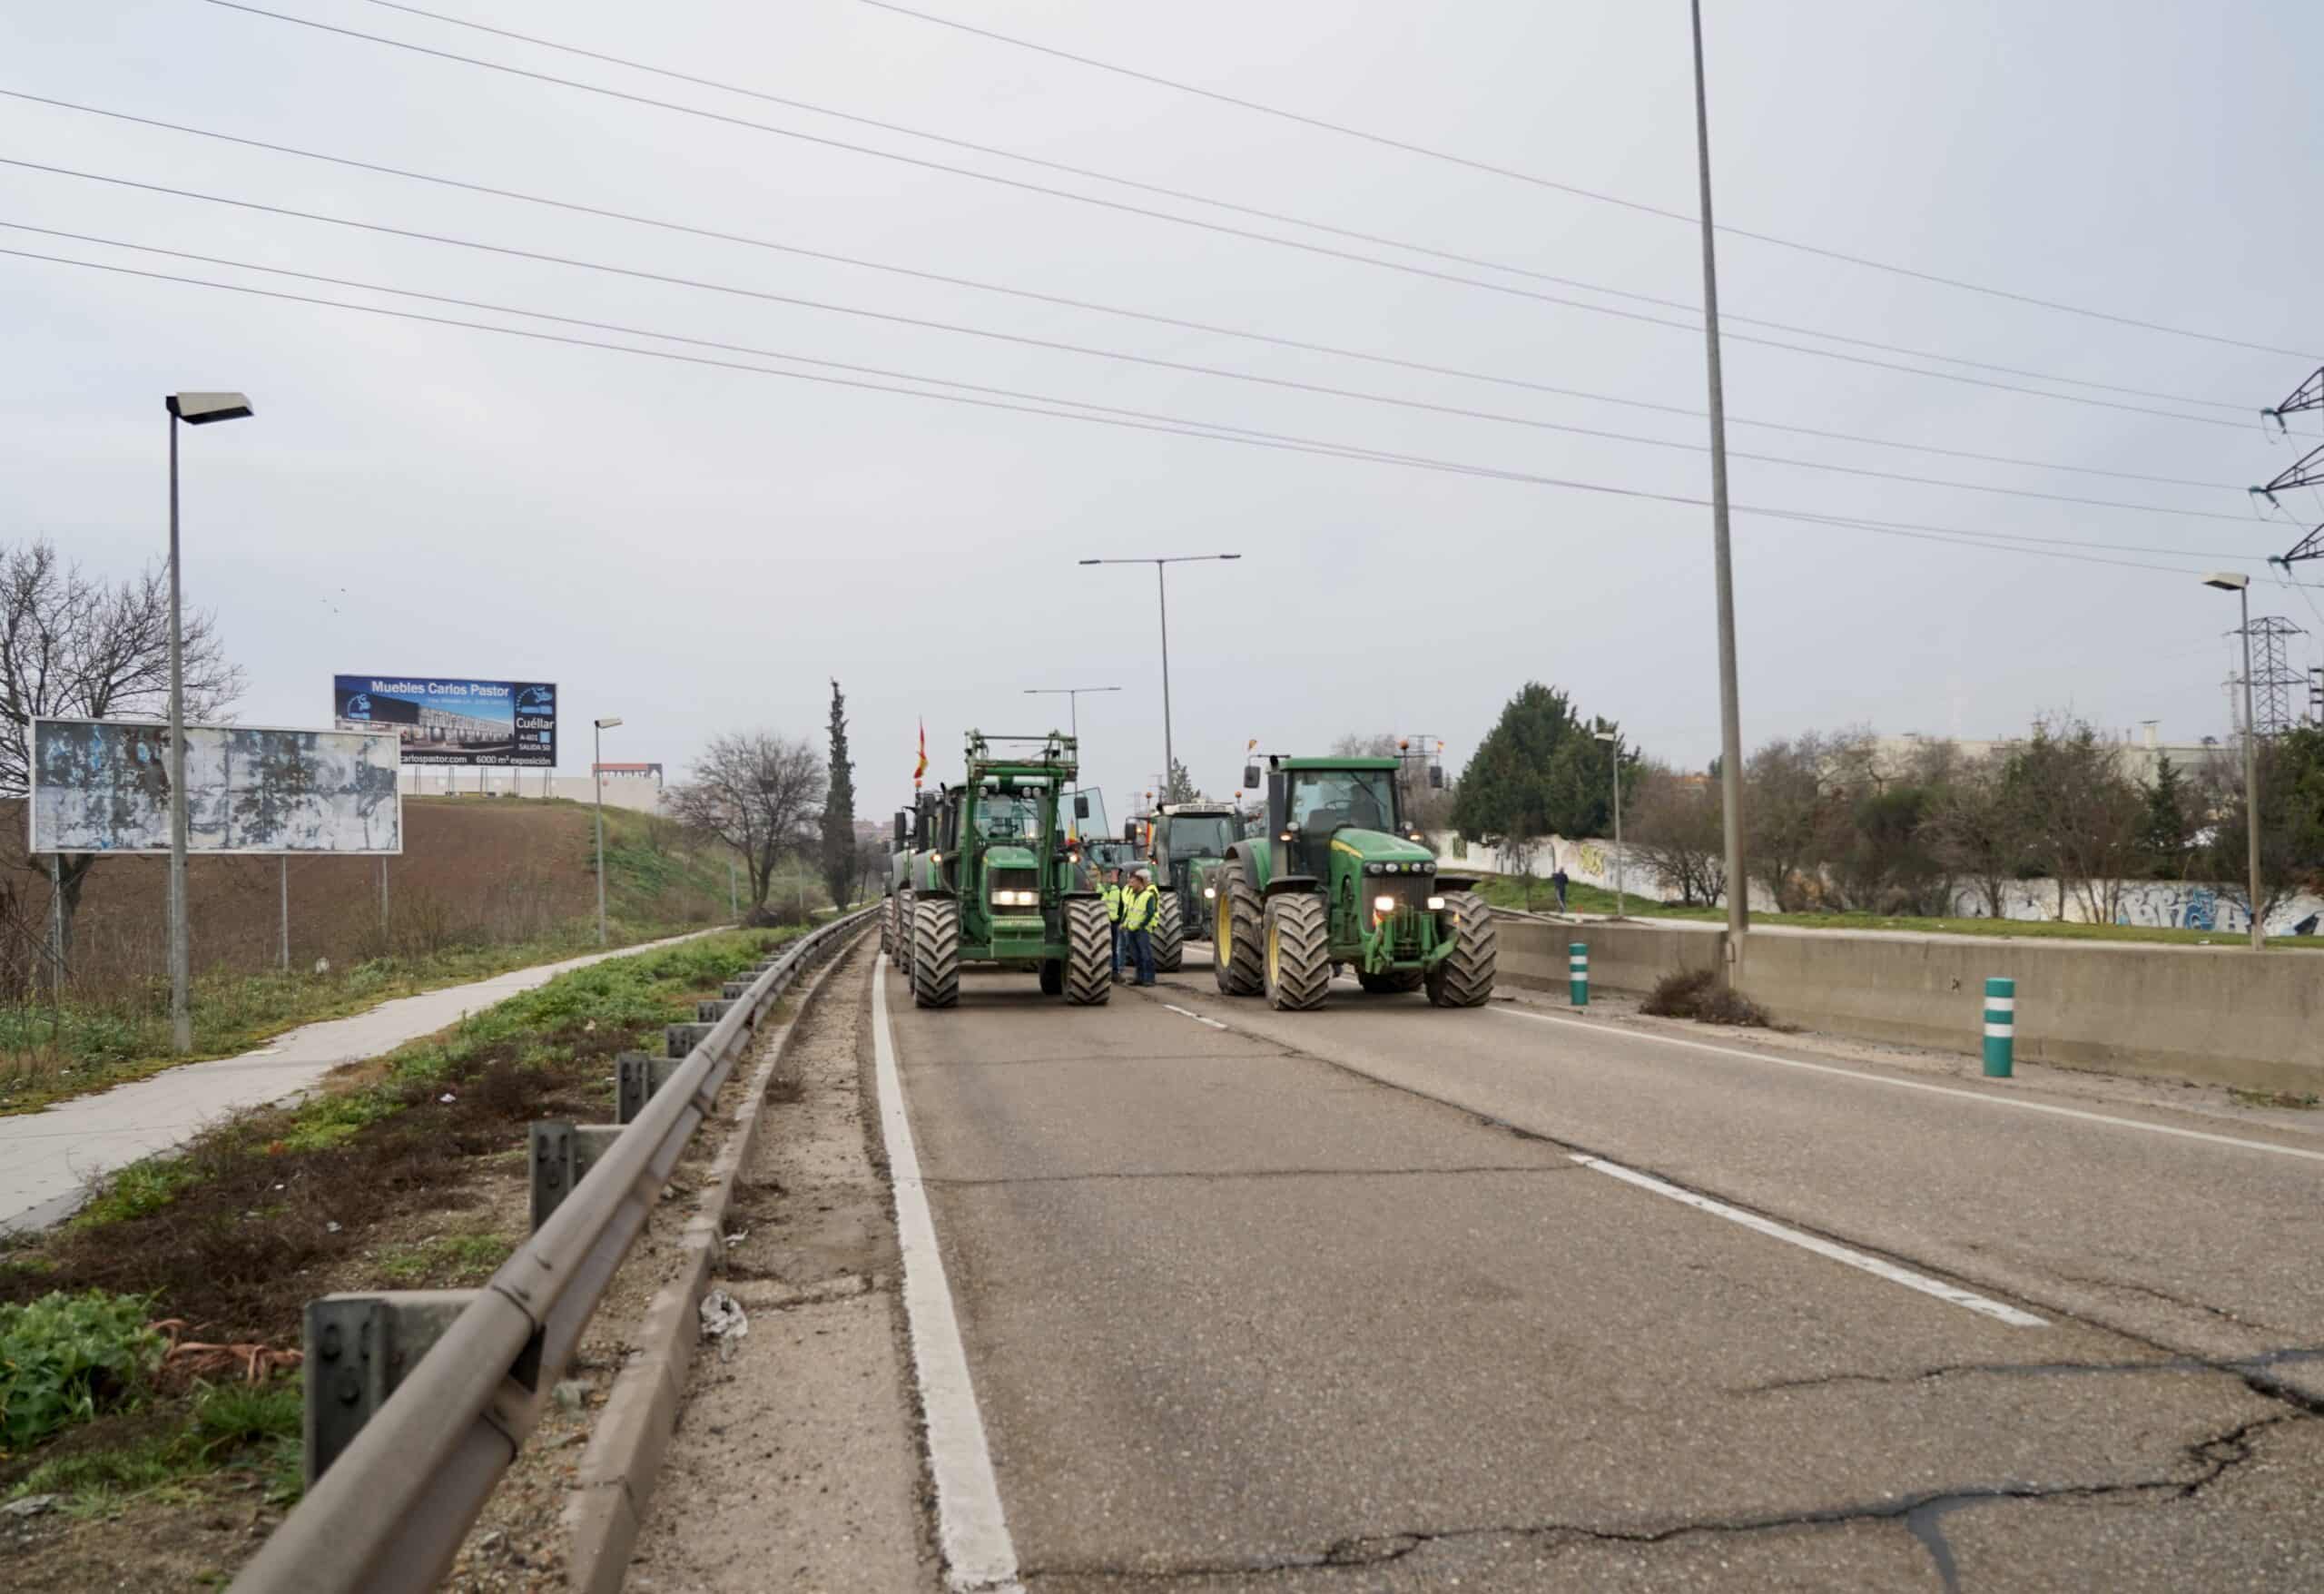 Las ‘tractoradas’ bloquean accesos a zonas industriales y autovías de la Comunidad